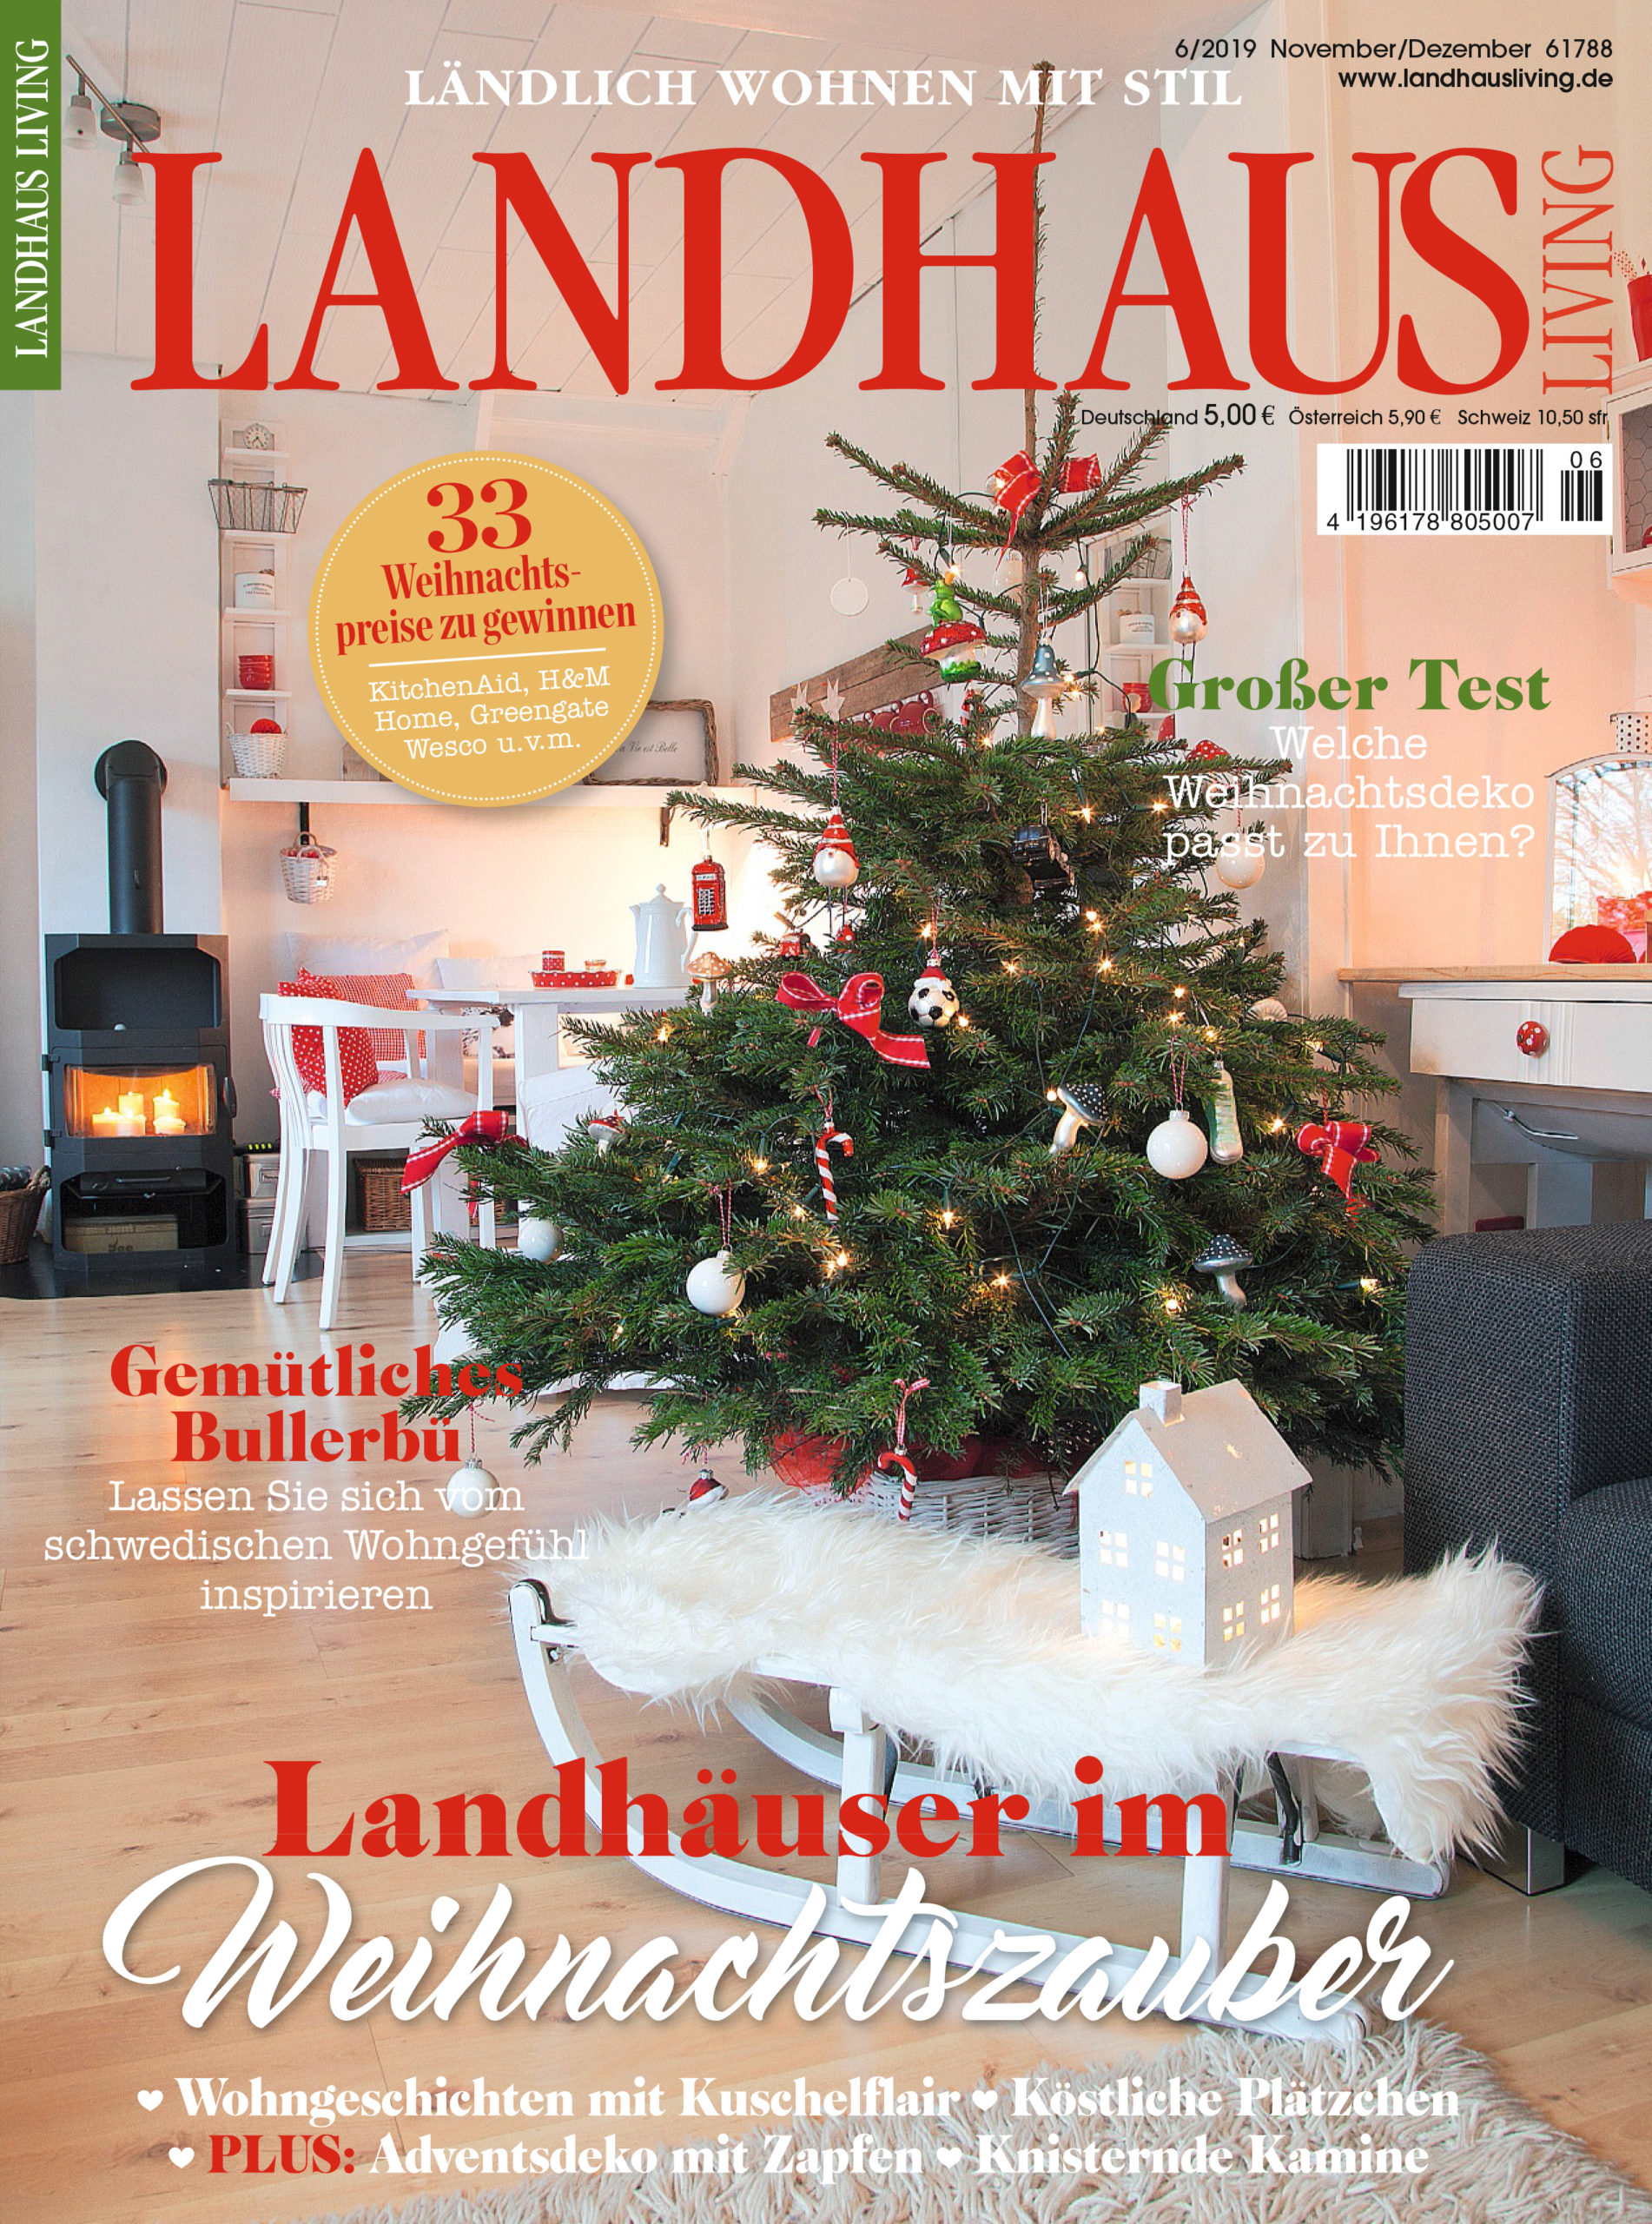 cover_landhausliving_2019-06